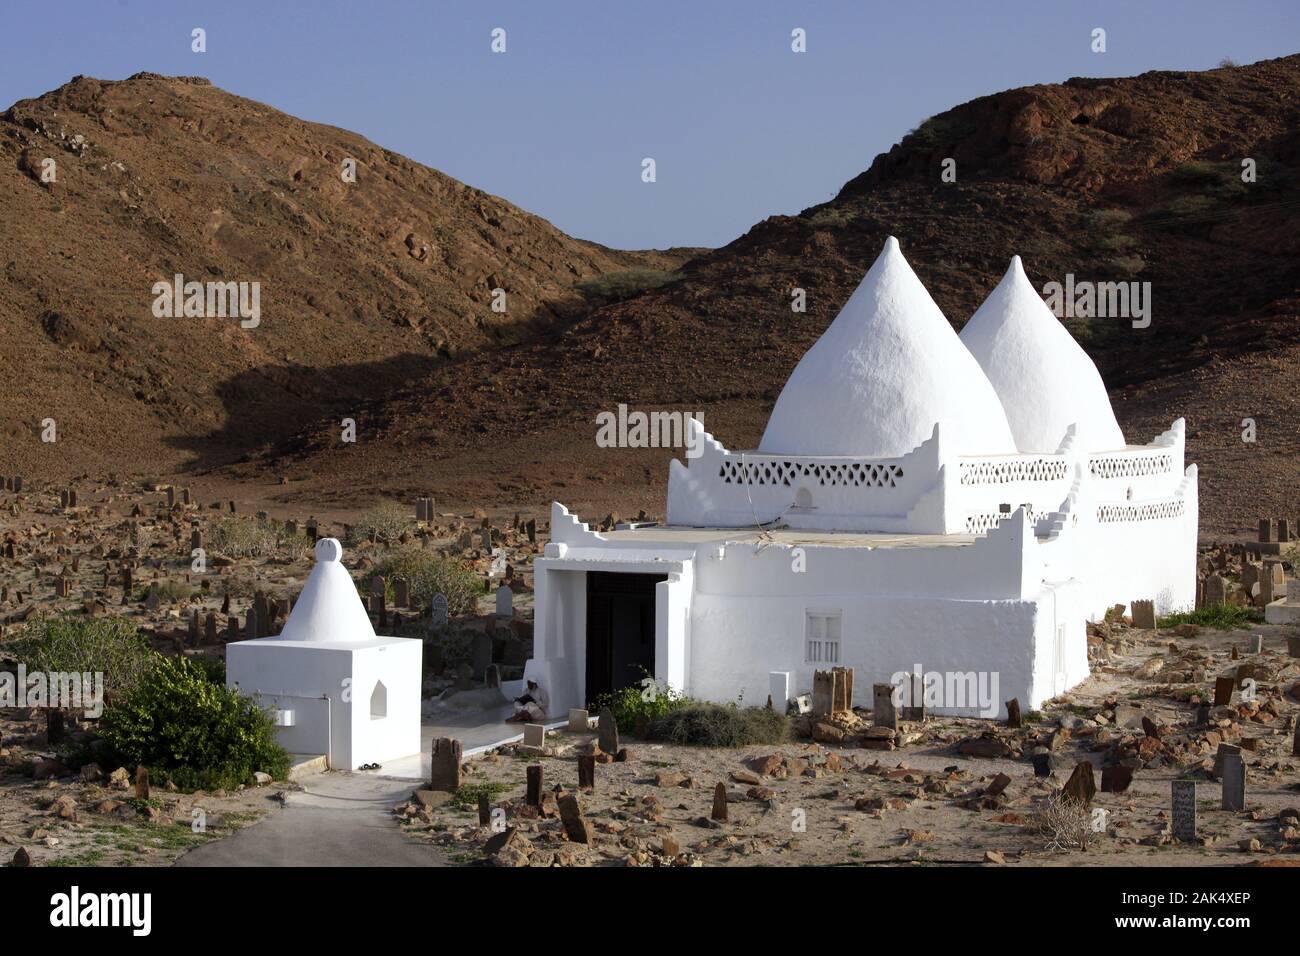 Sultanat Oman: Grabstaette des muslimischen Heiligen Bin Ali bei Mirbat, Dubai | usage worldwide Stock Photo